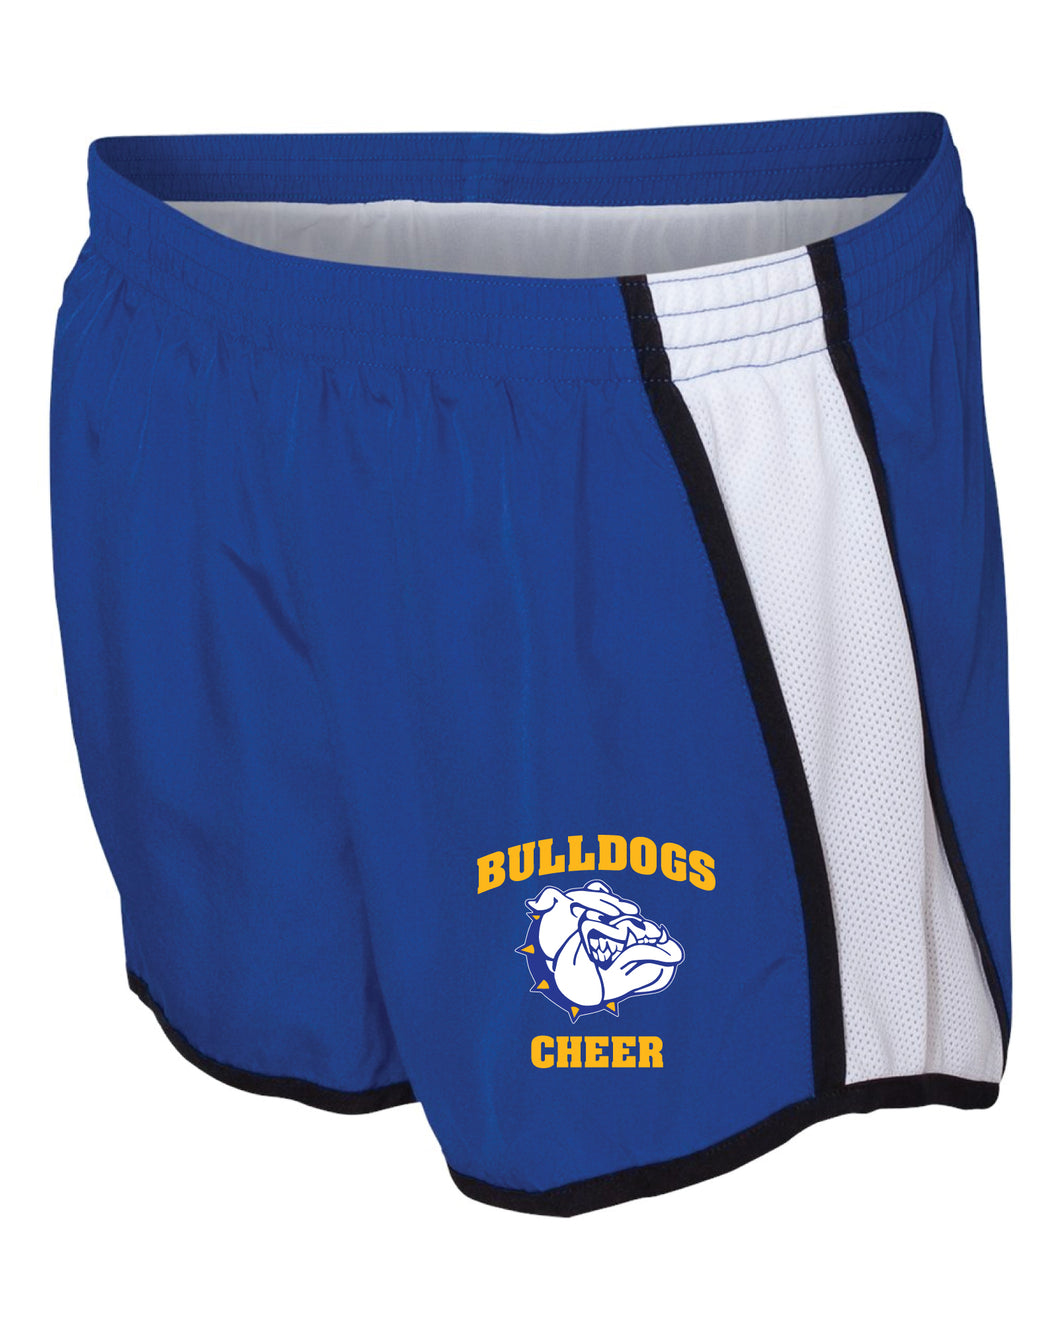 BBYC Bulldogs Cheer Athletic Shorts - Royal - 5KounT2018